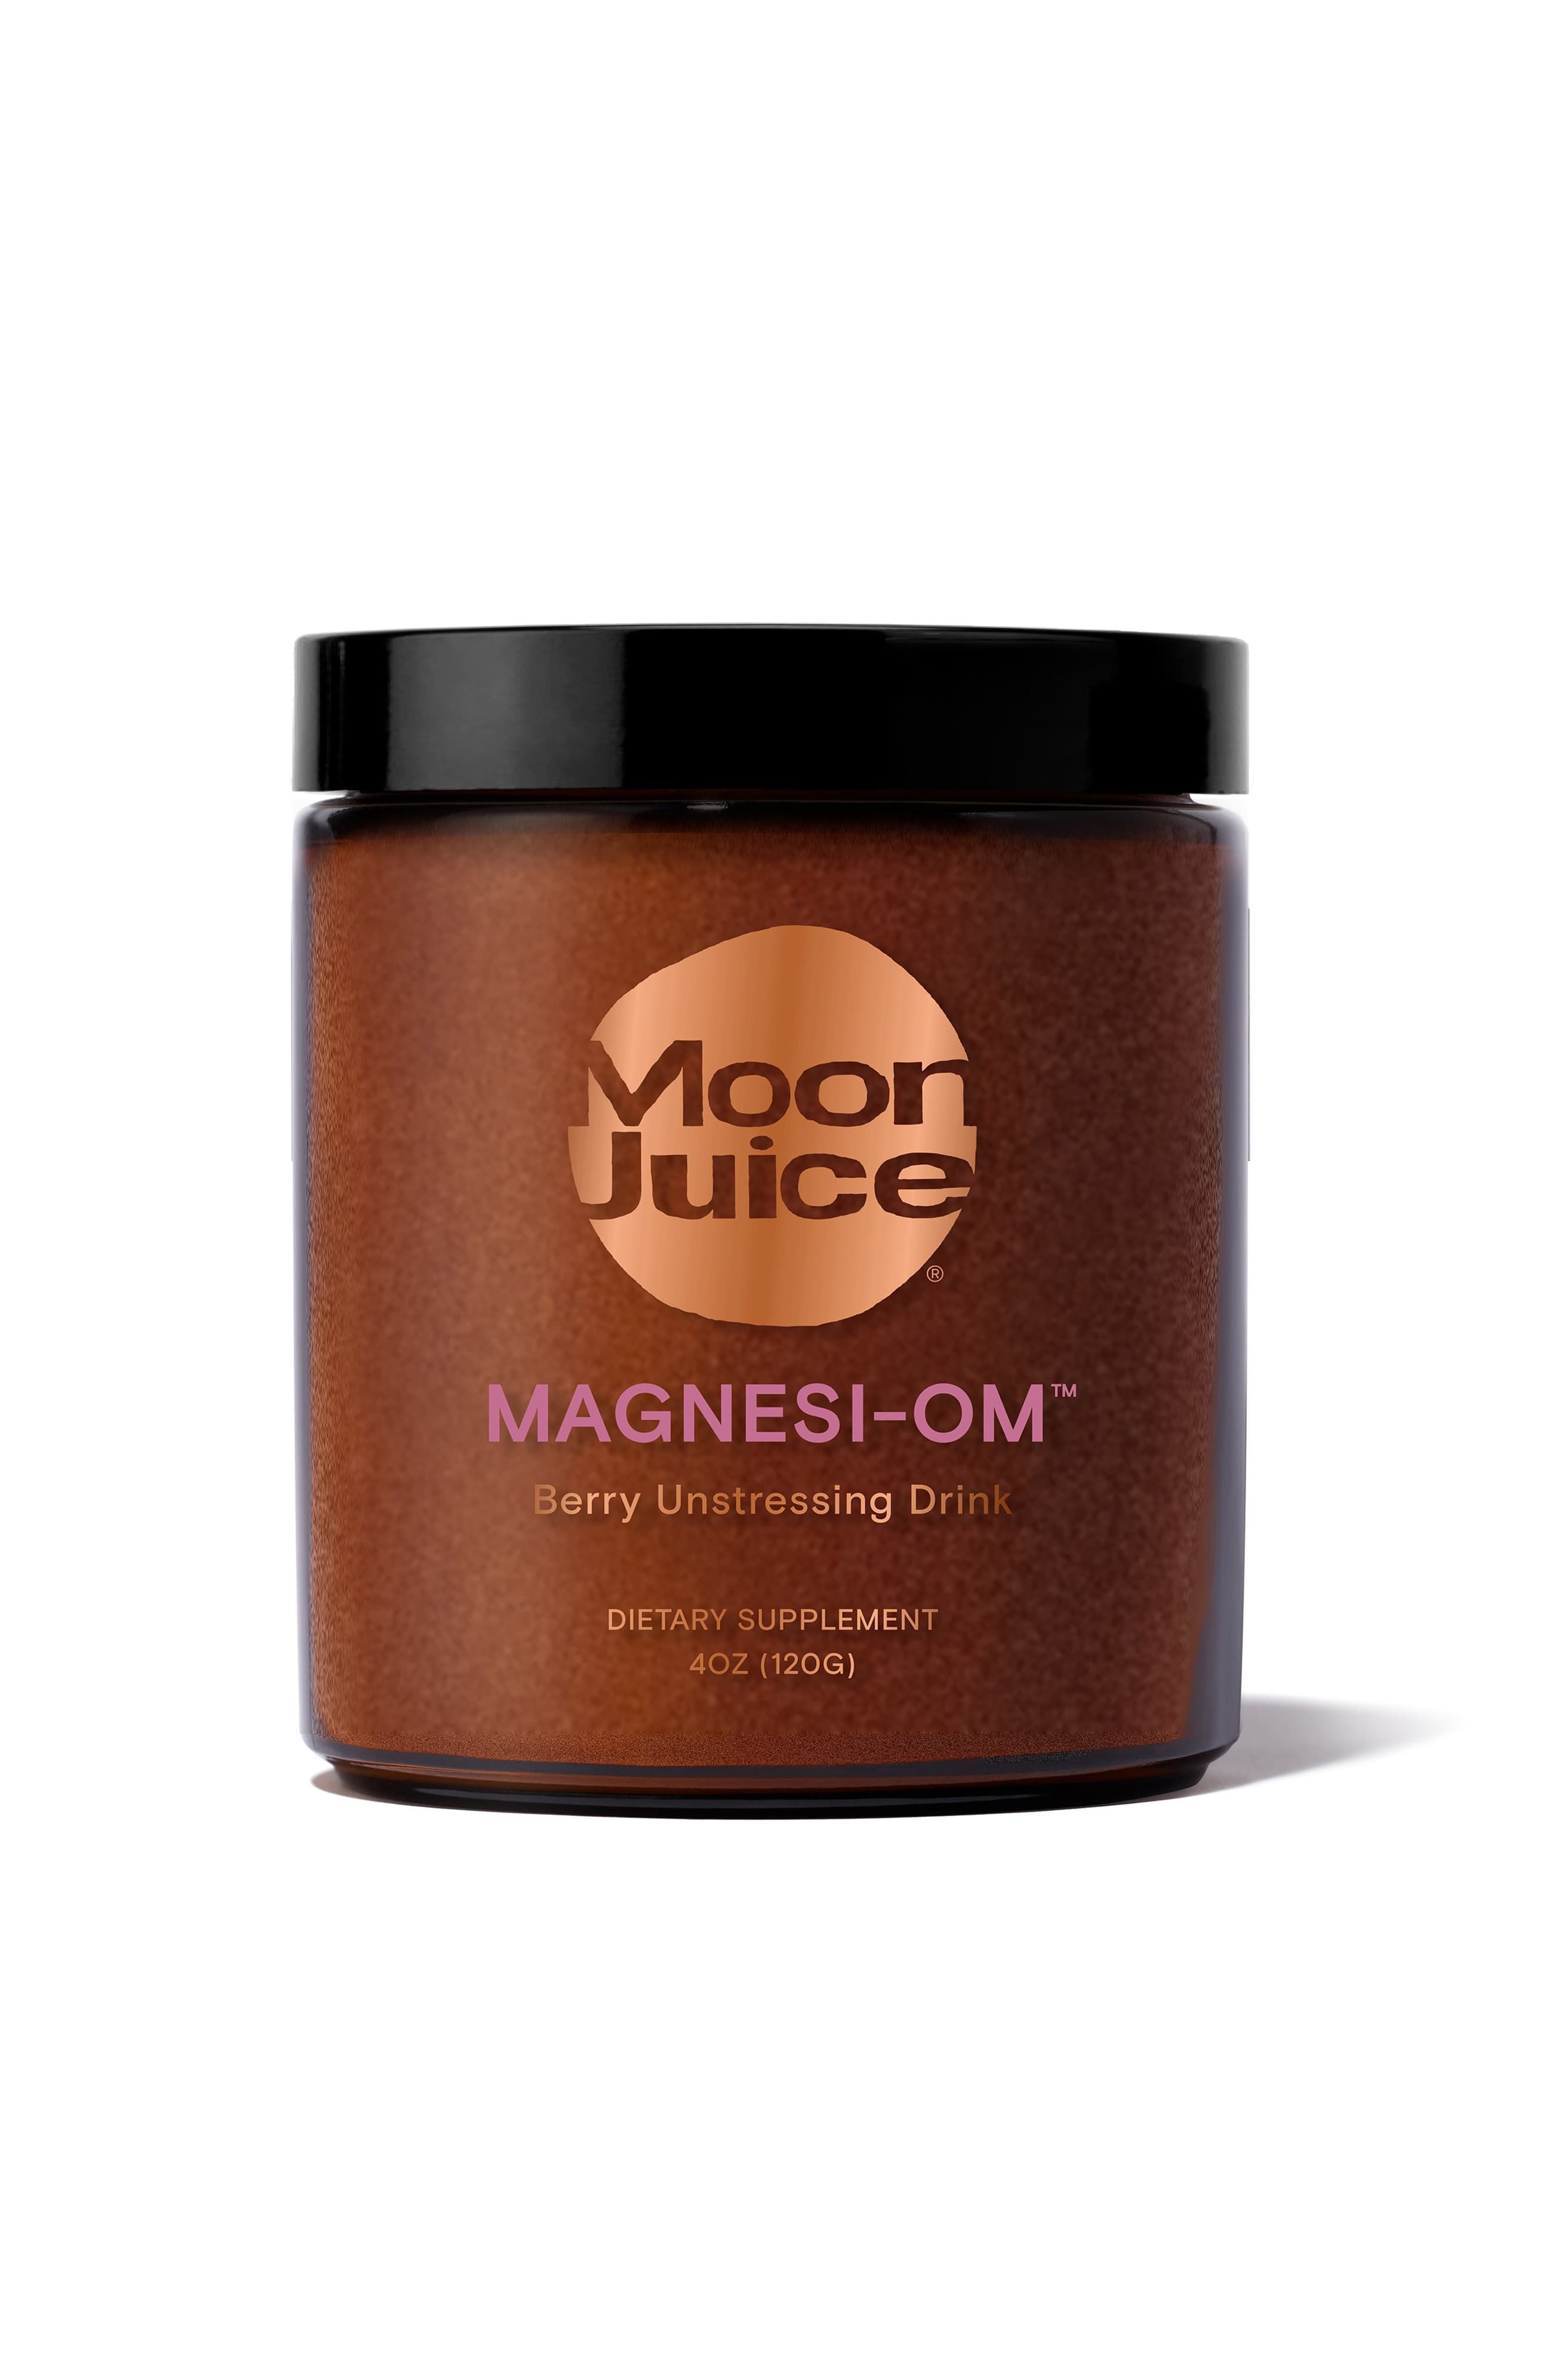 Magnesi-om™ Dietary Supplement